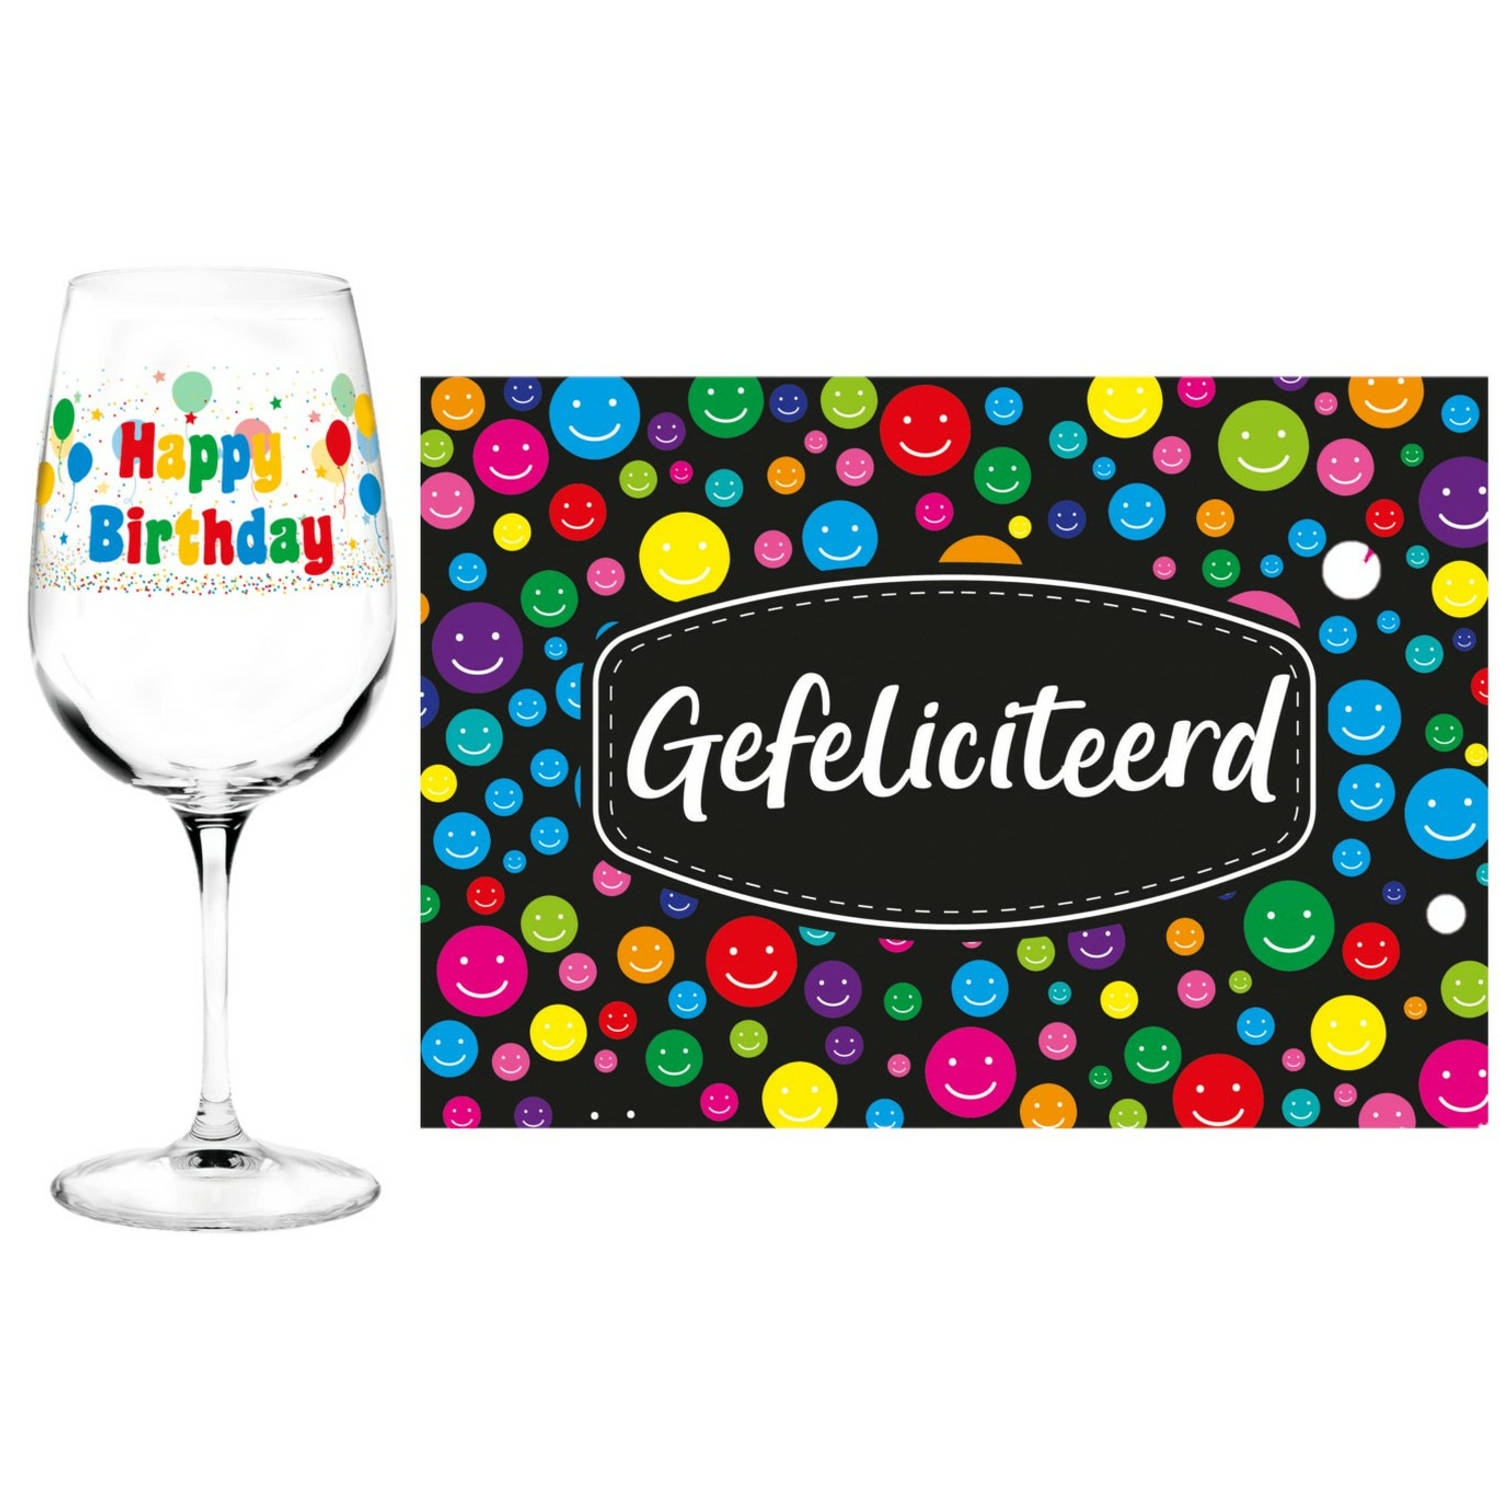 Happy Birthday cadeau glas 65 jaar verjaardag en Gefeliciteerd kaart feest glas wijn